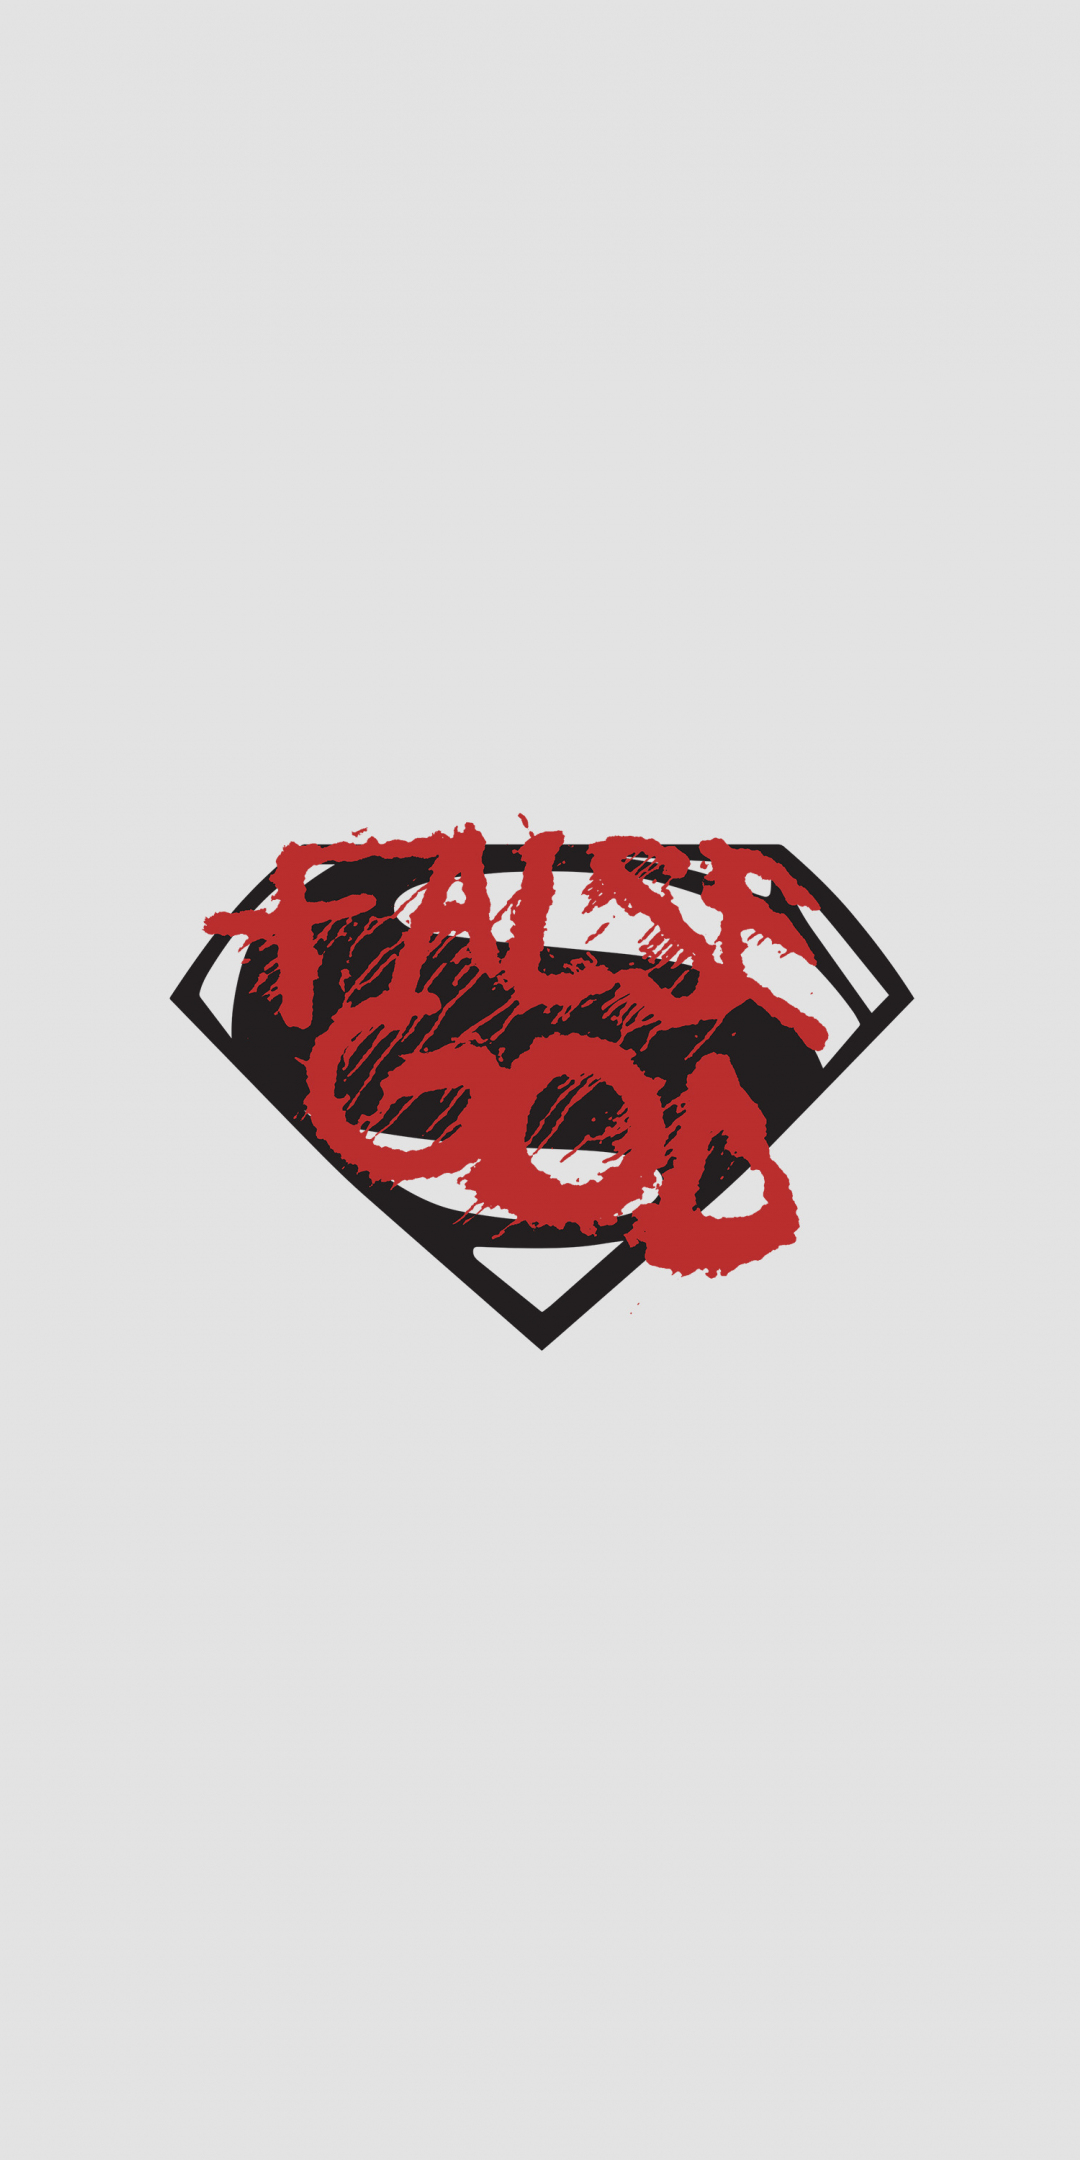 False god, batman vs superman, minimal, logo, 1080x2160 wallpaper